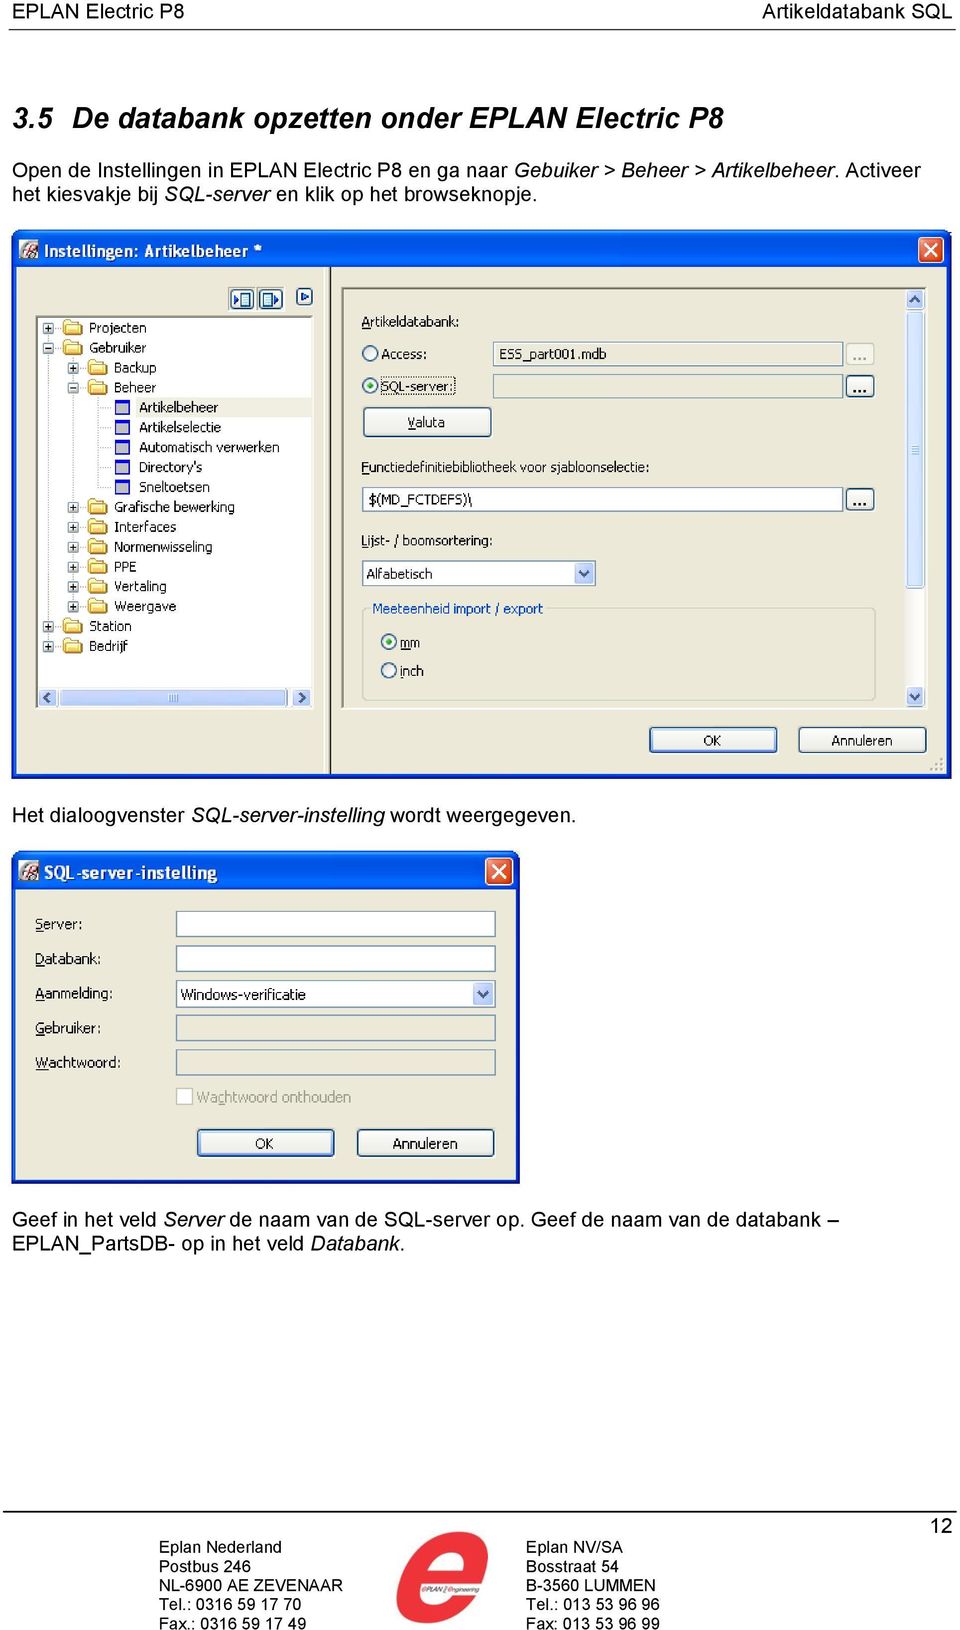 Activeer het kiesvakje bij SQL-server en klik op het browseknopje.